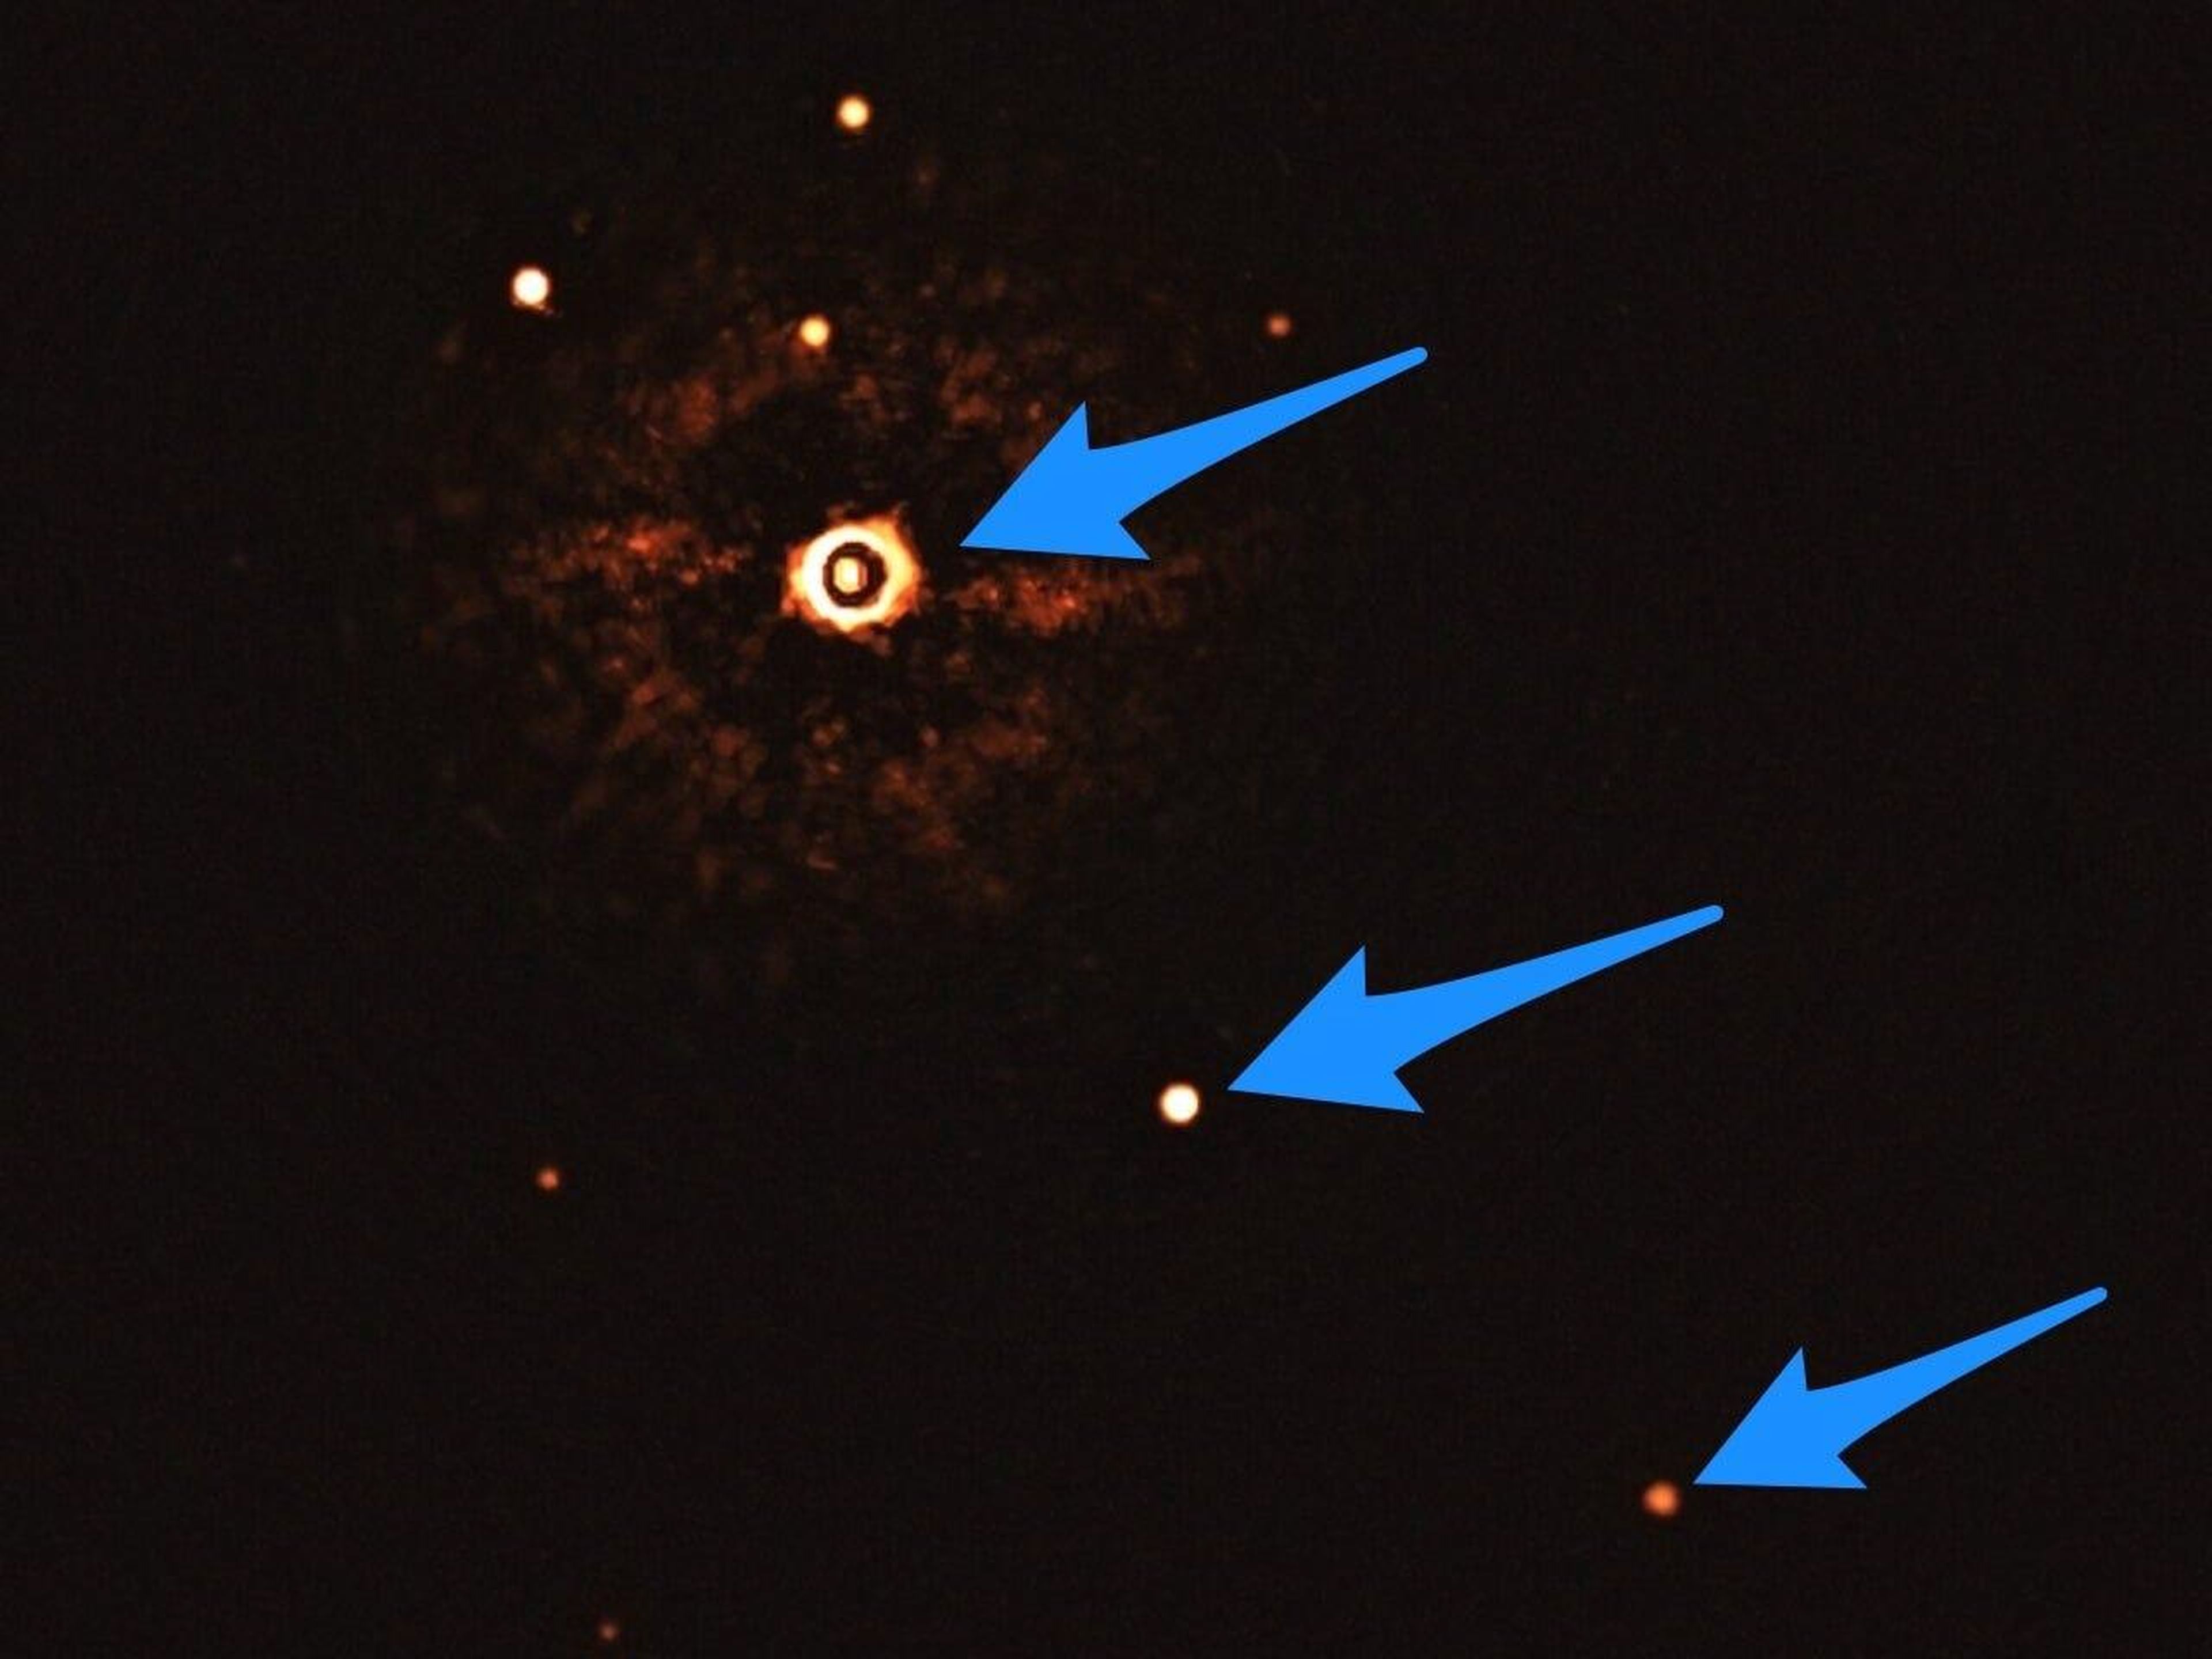 Esta imagen muestra la estrella TYC 8998-760-1 (izquierda) acompañada de dos exoplanetas gigantes, TYC 8998-760-1b y TYC 8998-760-1c.